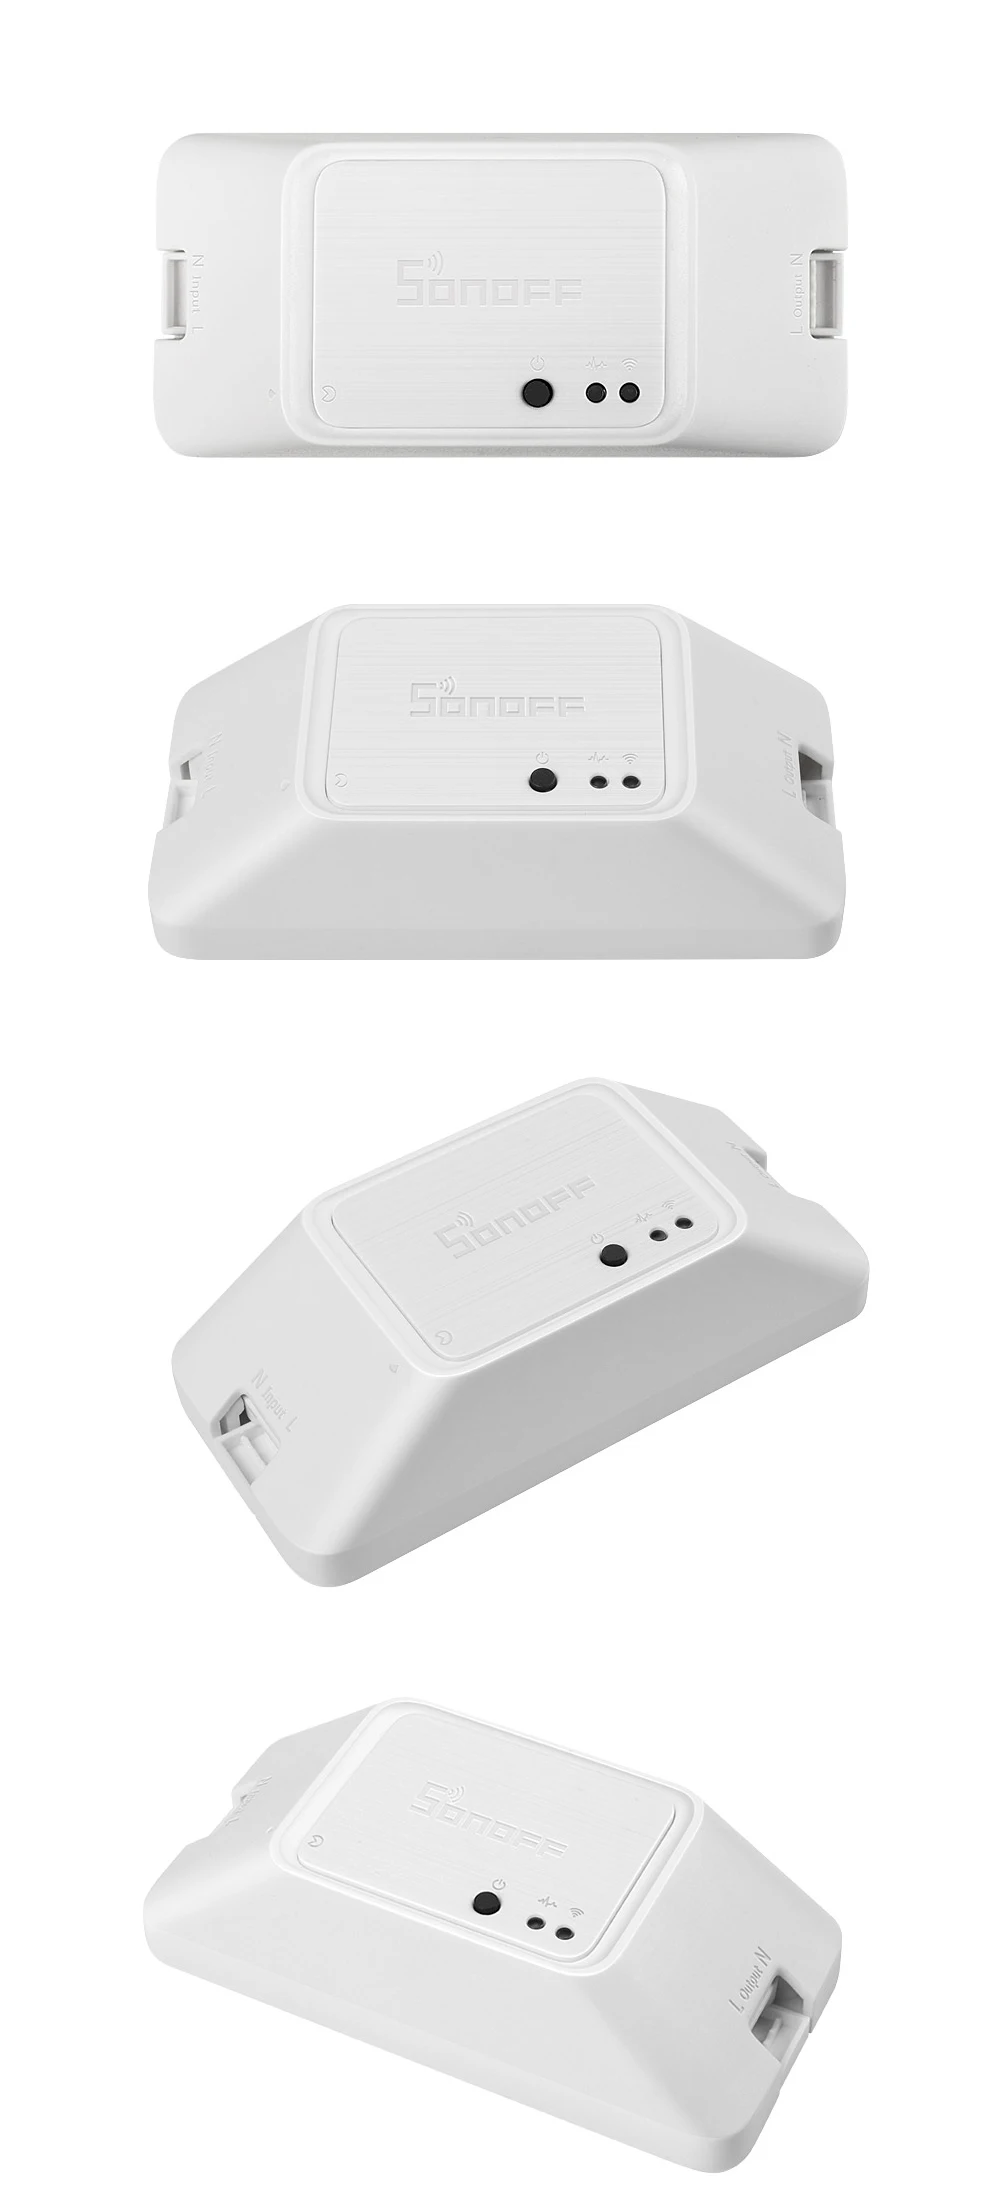 Sonoff zbr3 zigbee switch module diy smart switch wireless switches voice control via alexa smartthings hub (3pcs basiczbr3)